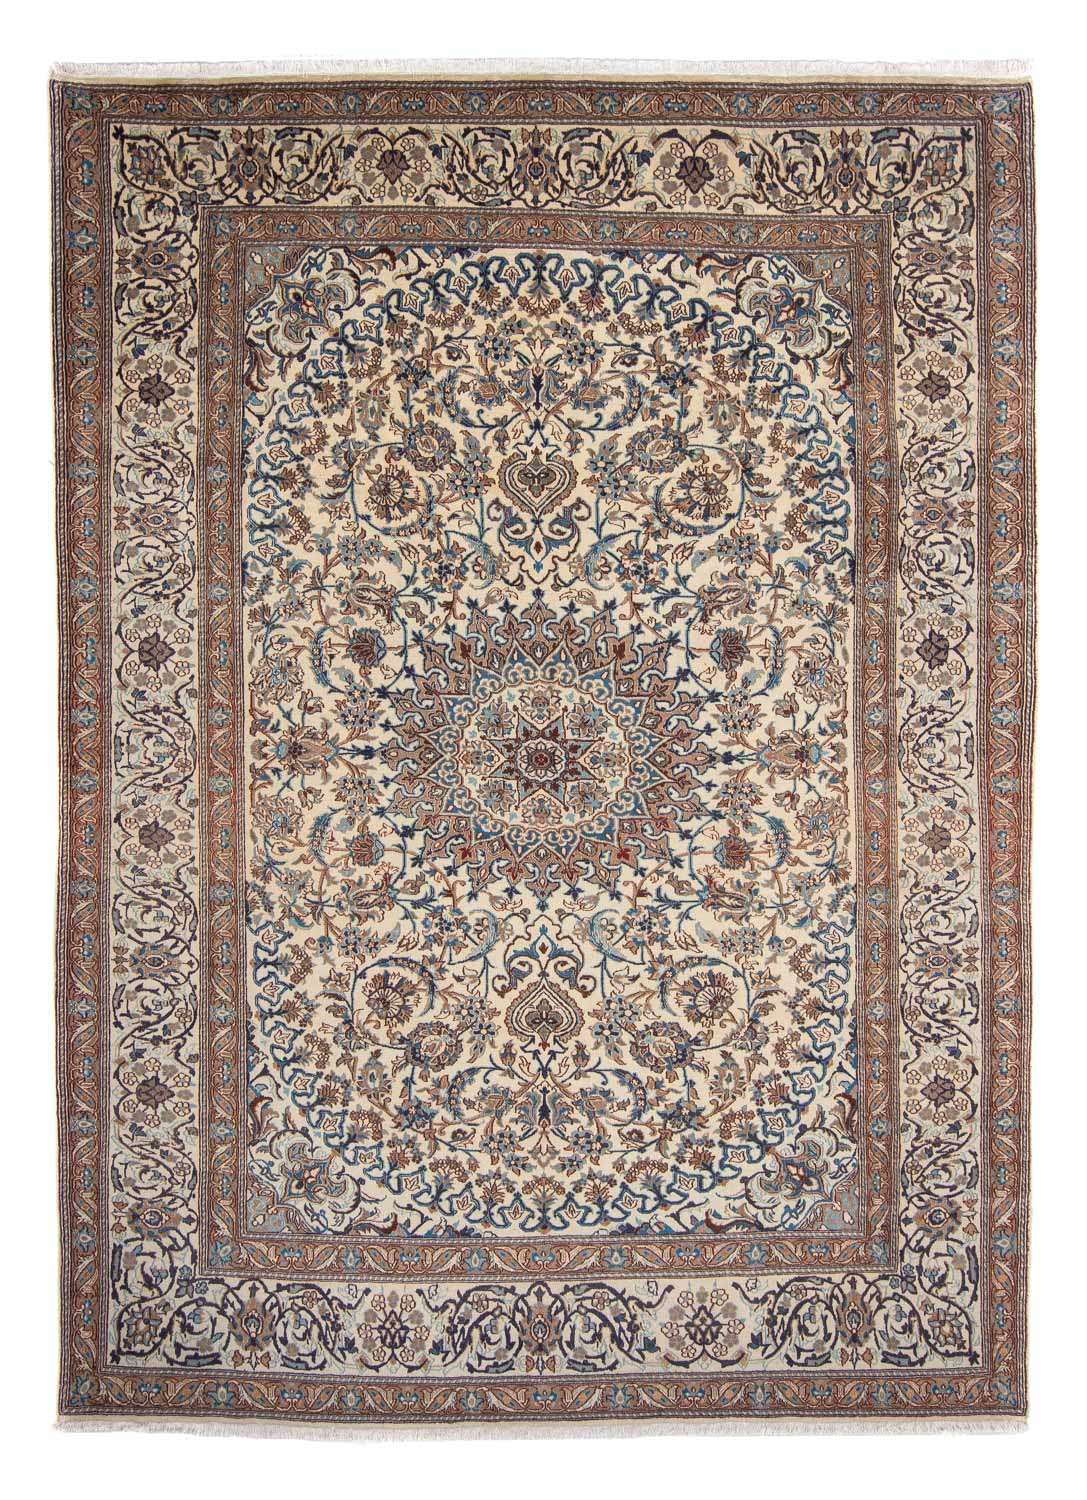 Tapis persan - Classique - 343 x 248 cm - beige